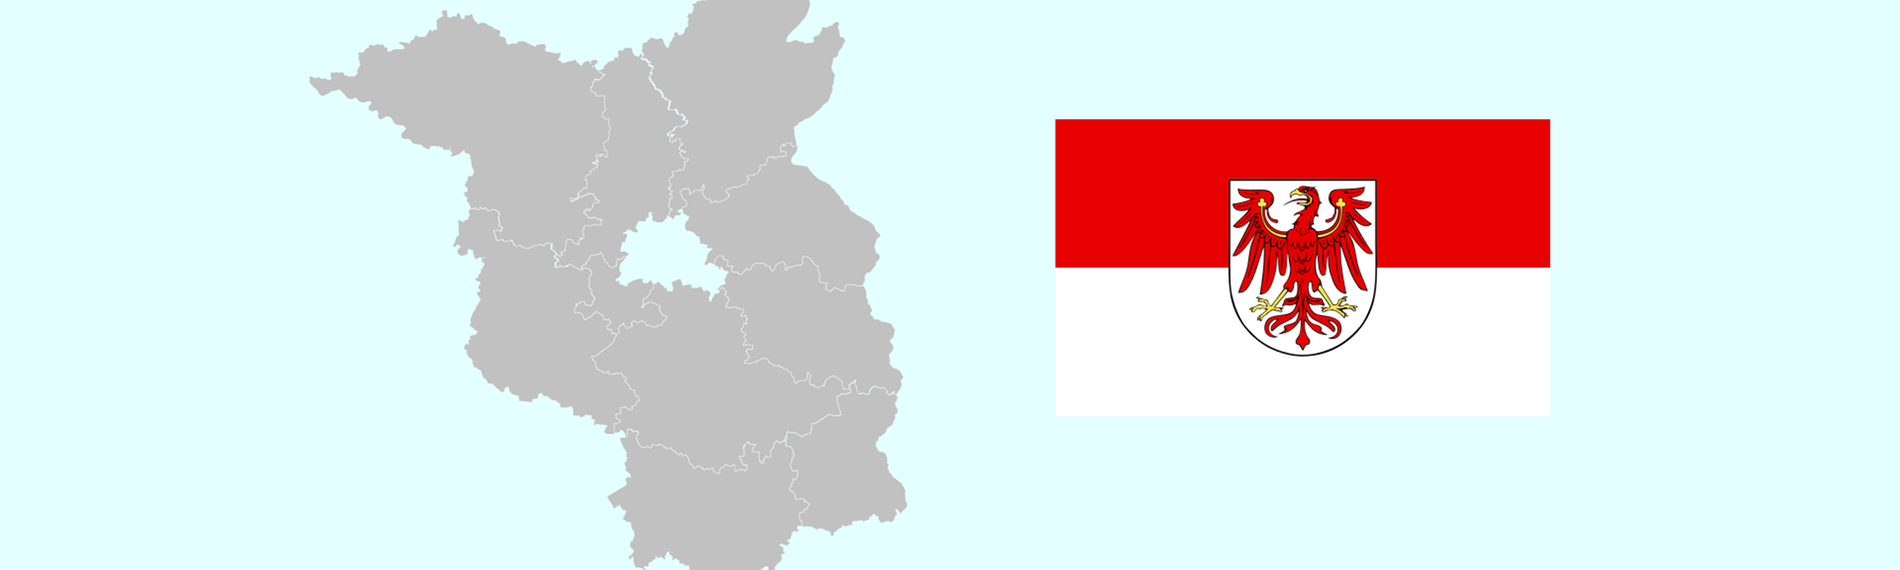 Wahlkreise und Flagge von Brandenburg